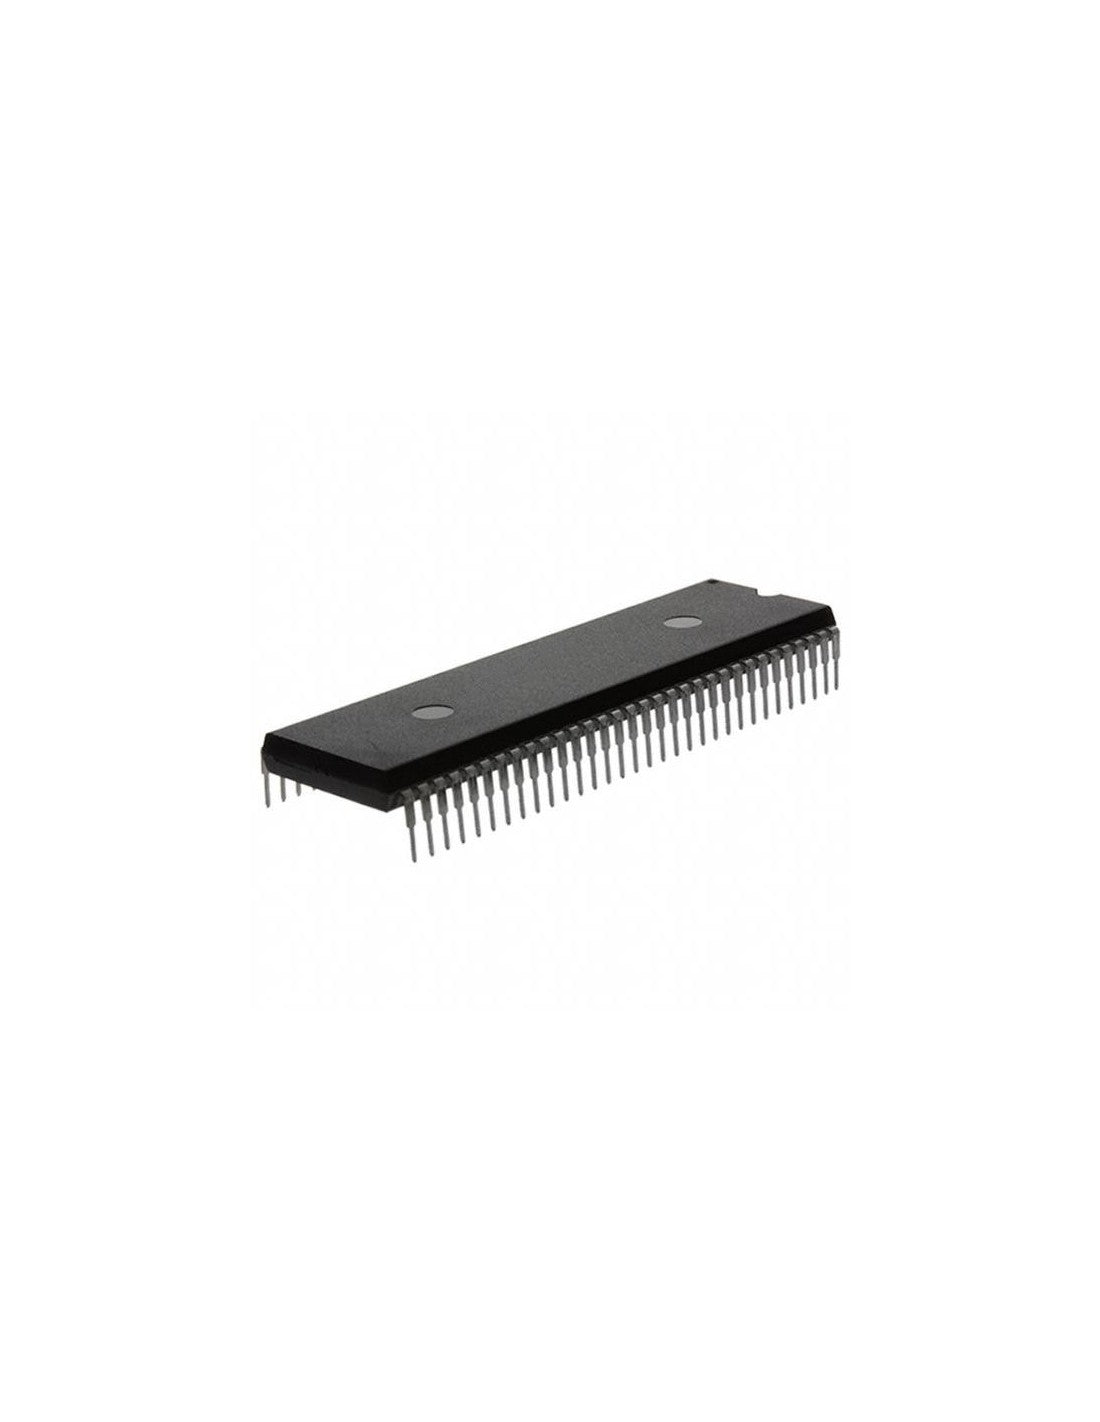 NEC UPC1420 Componente elettronico, circuito integrato, transistor, 48 contatti